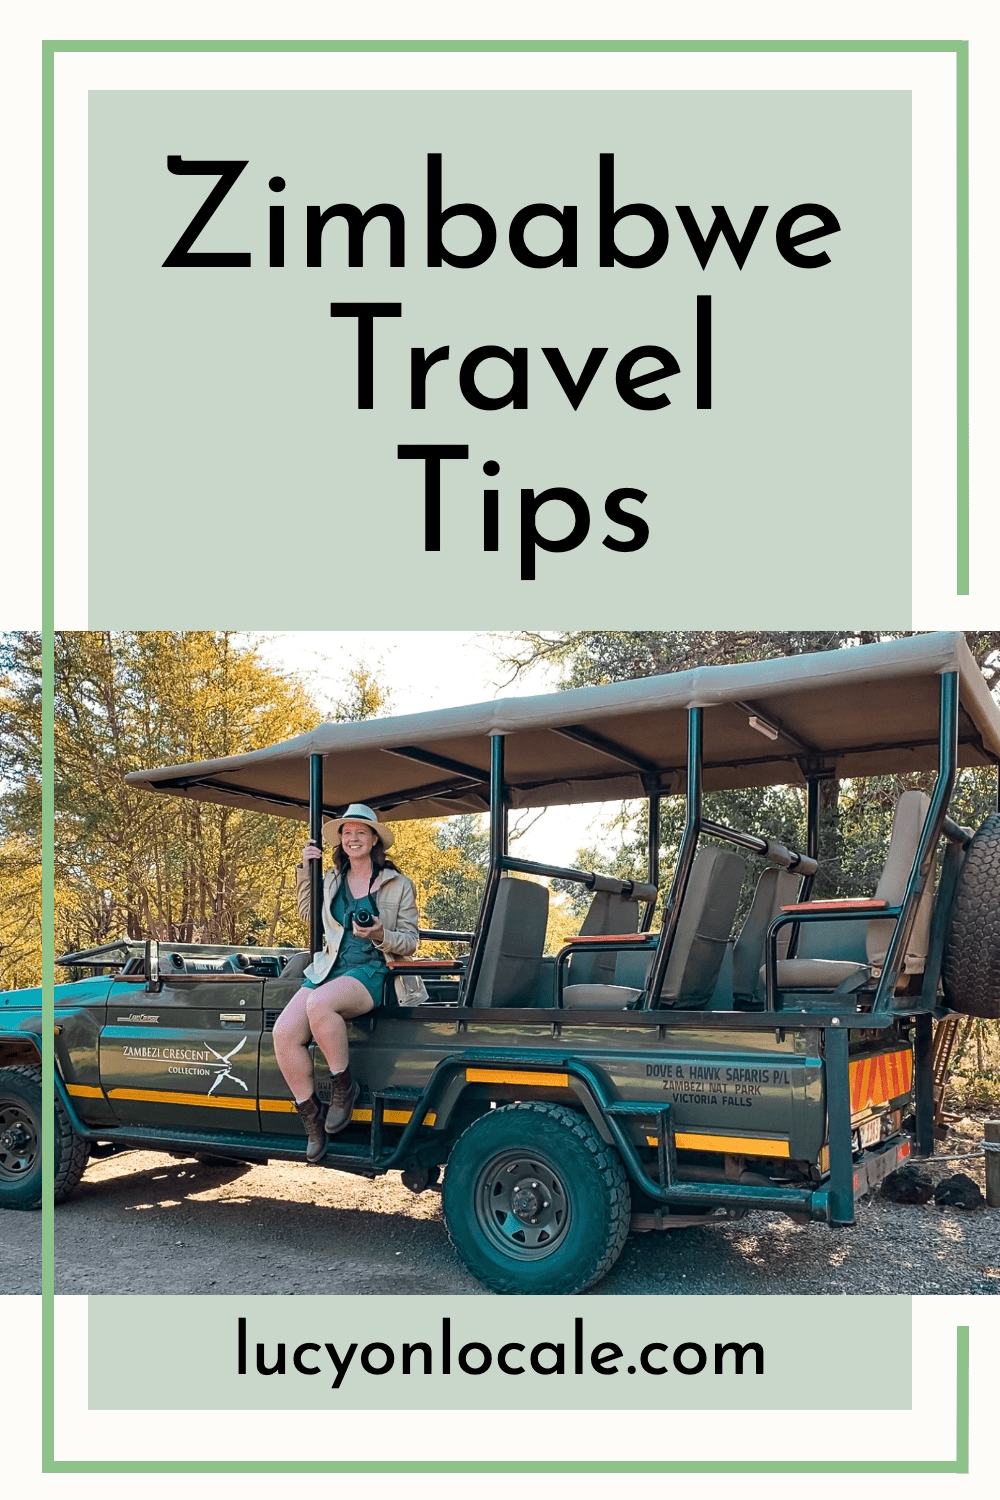 Zimbabwe travel tips